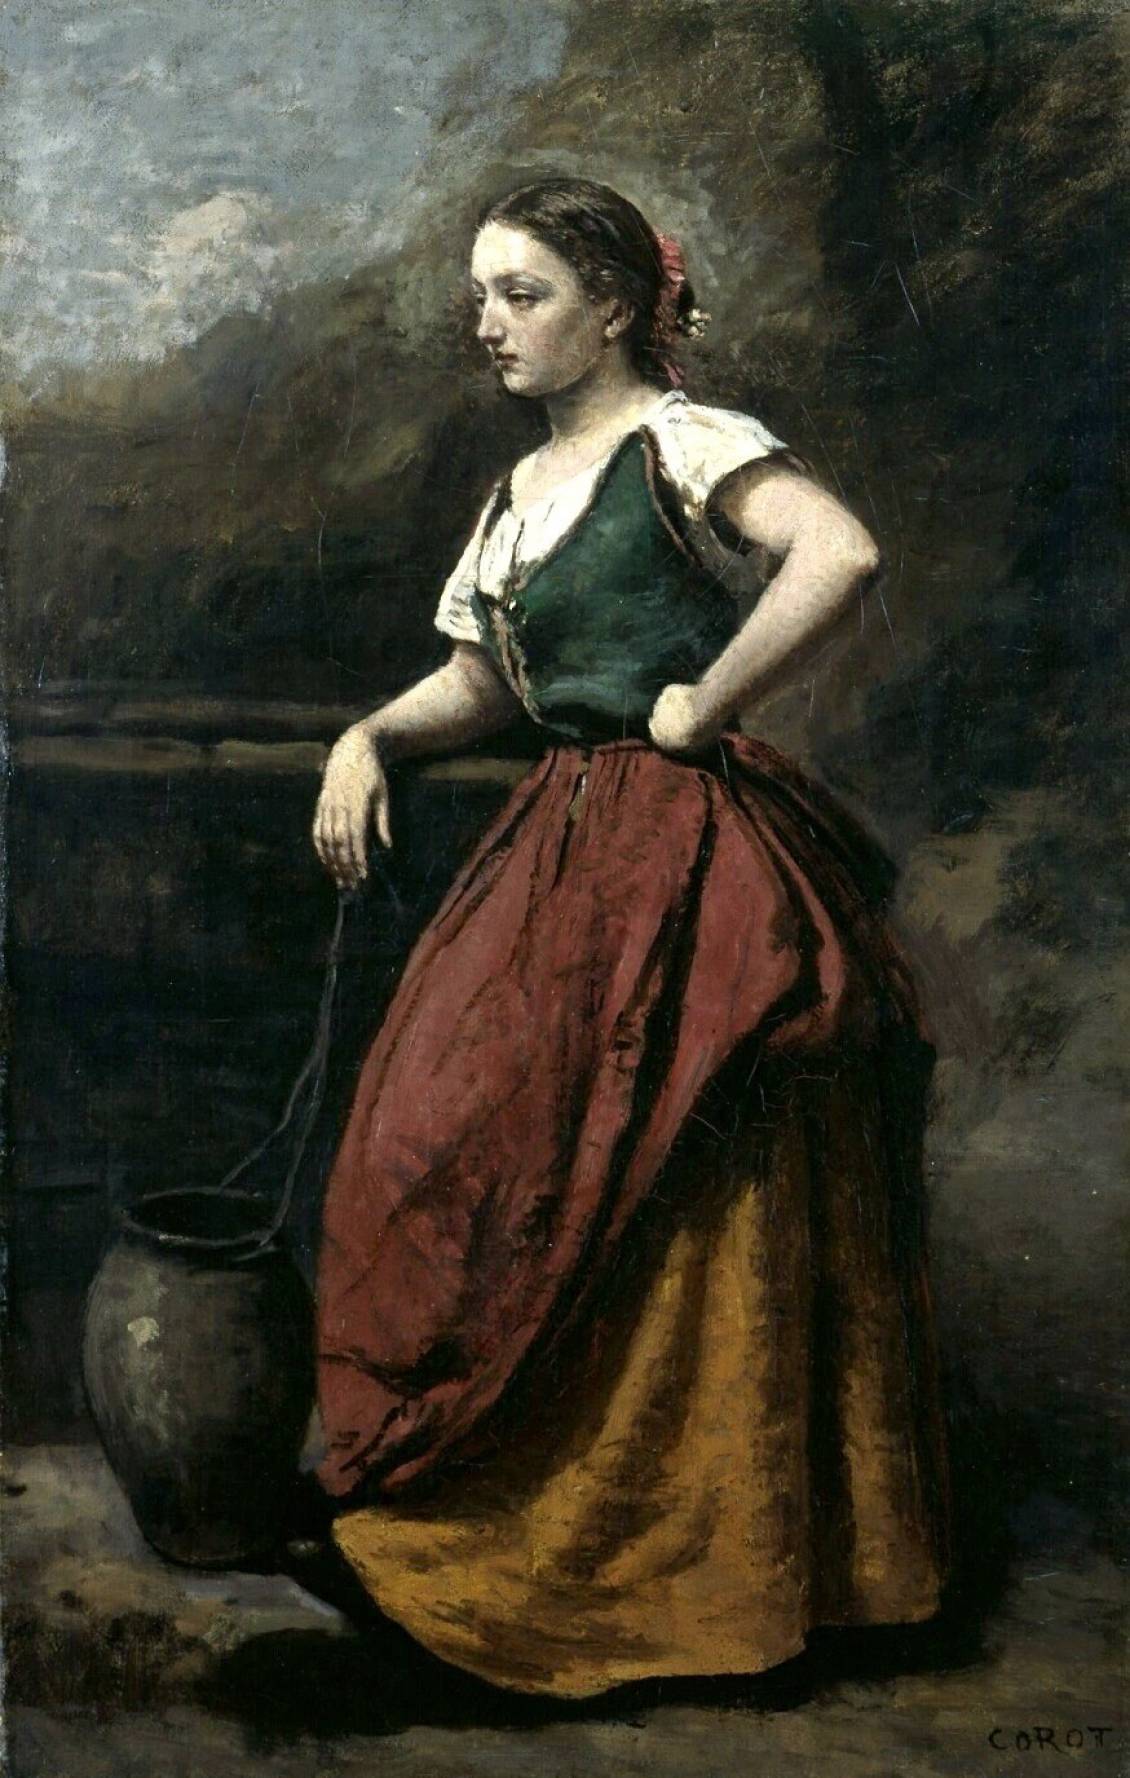 Jean-Baptiste Corot, Jonge vrouw bij een bron, 1865-1870 (Voormalig collectie Rijksmuseum Kröller-Müller)